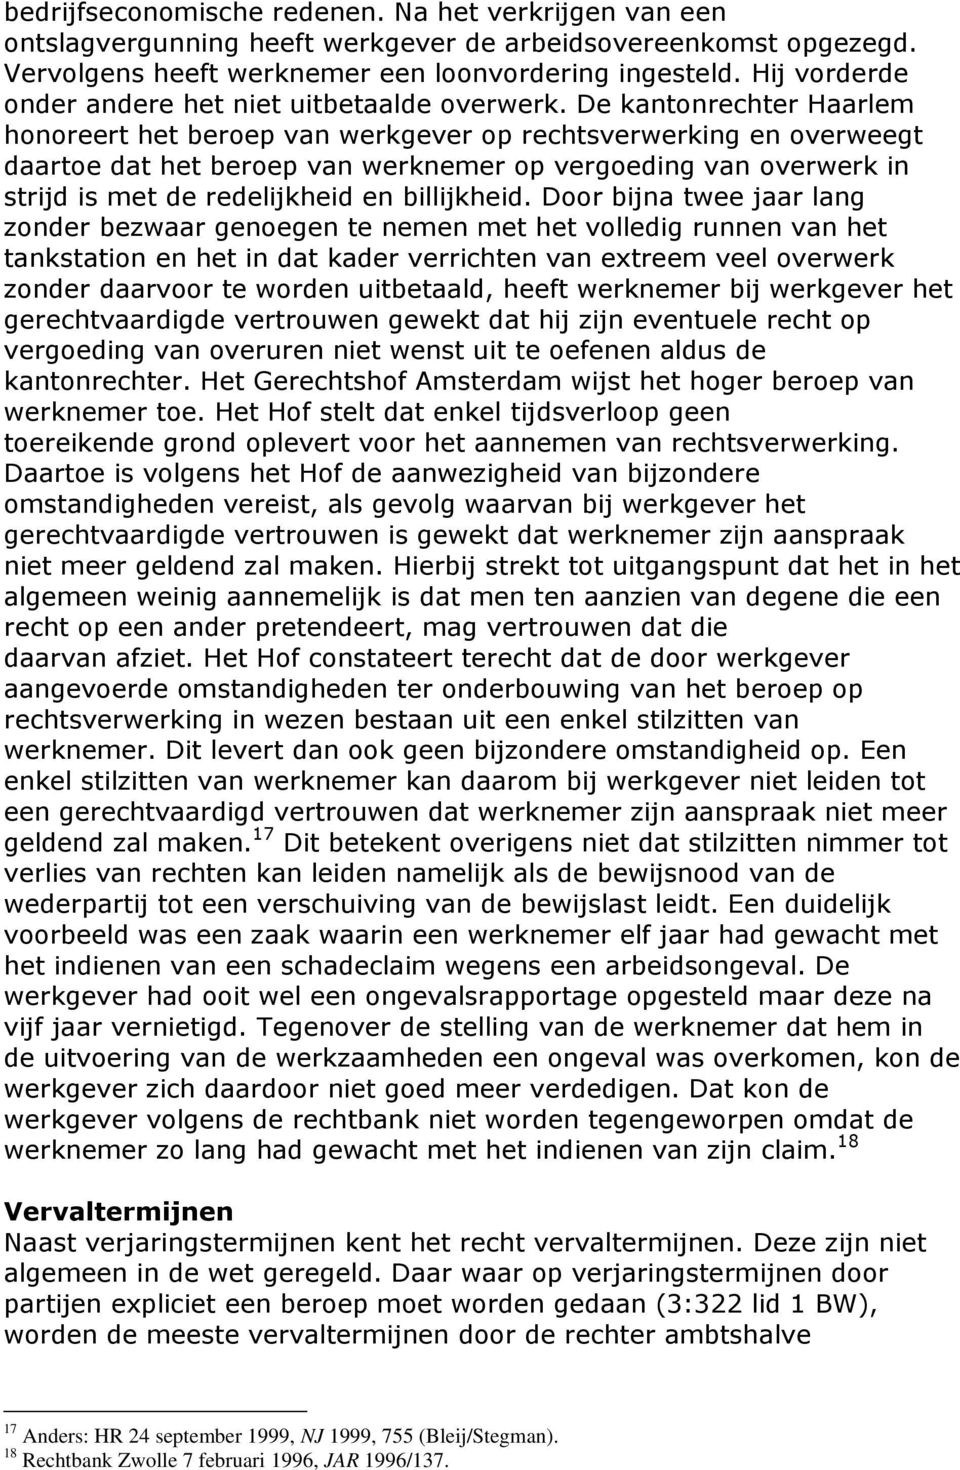 De kantonrechter Haarlem honoreert het beroep van werkgever op rechtsverwerking en overweegt daartoe dat het beroep van werknemer op vergoeding van overwerk in strijd is met de redelijkheid en